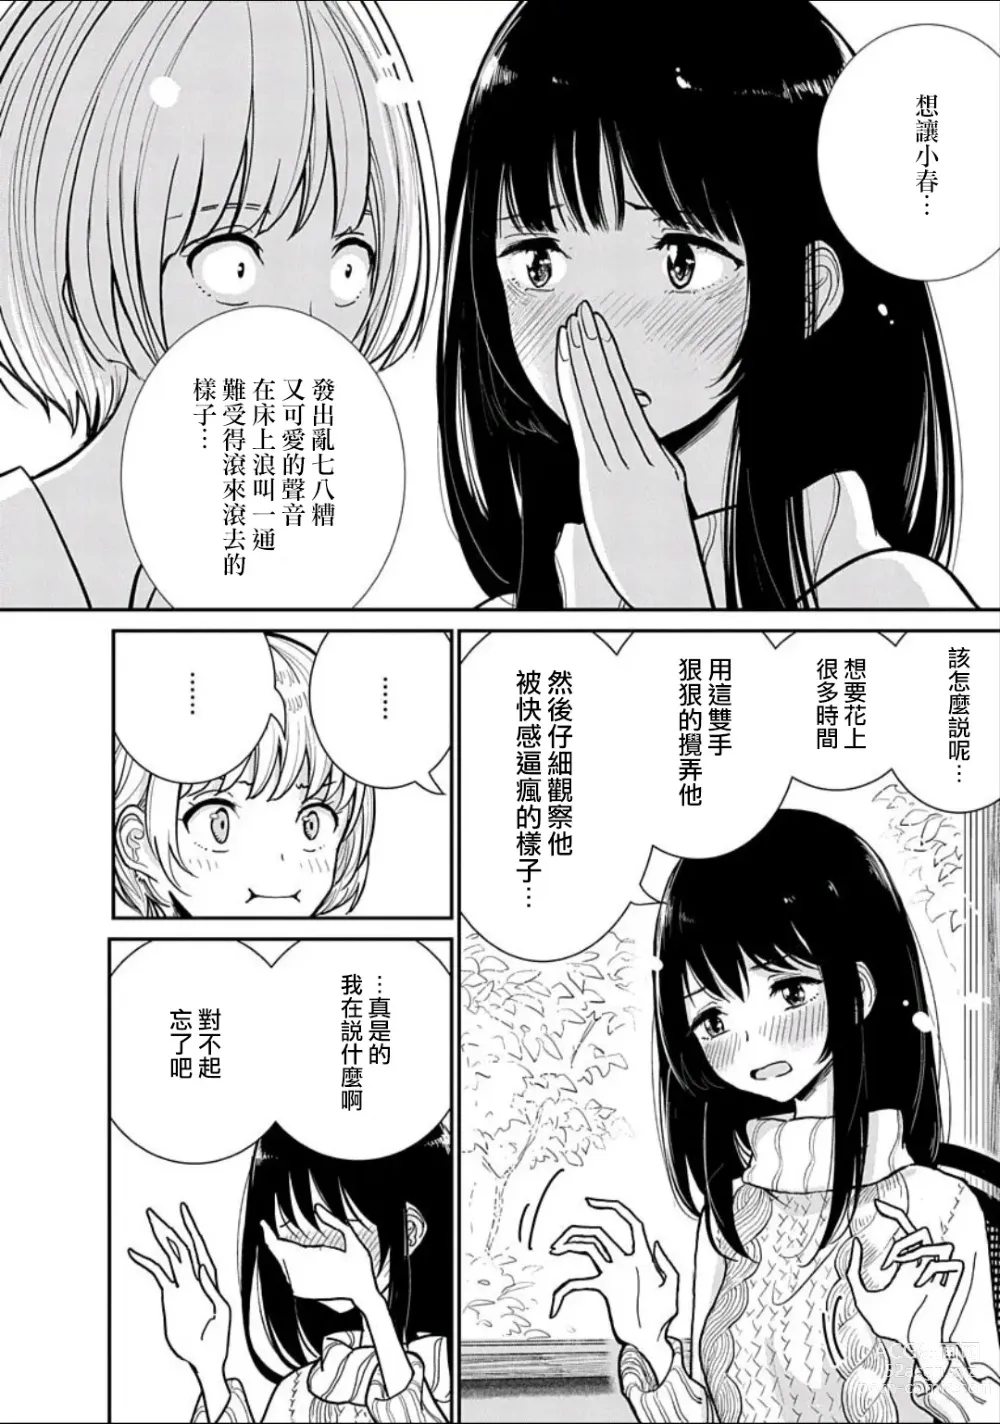 Page 11 of manga 在你嬌聲求我之前